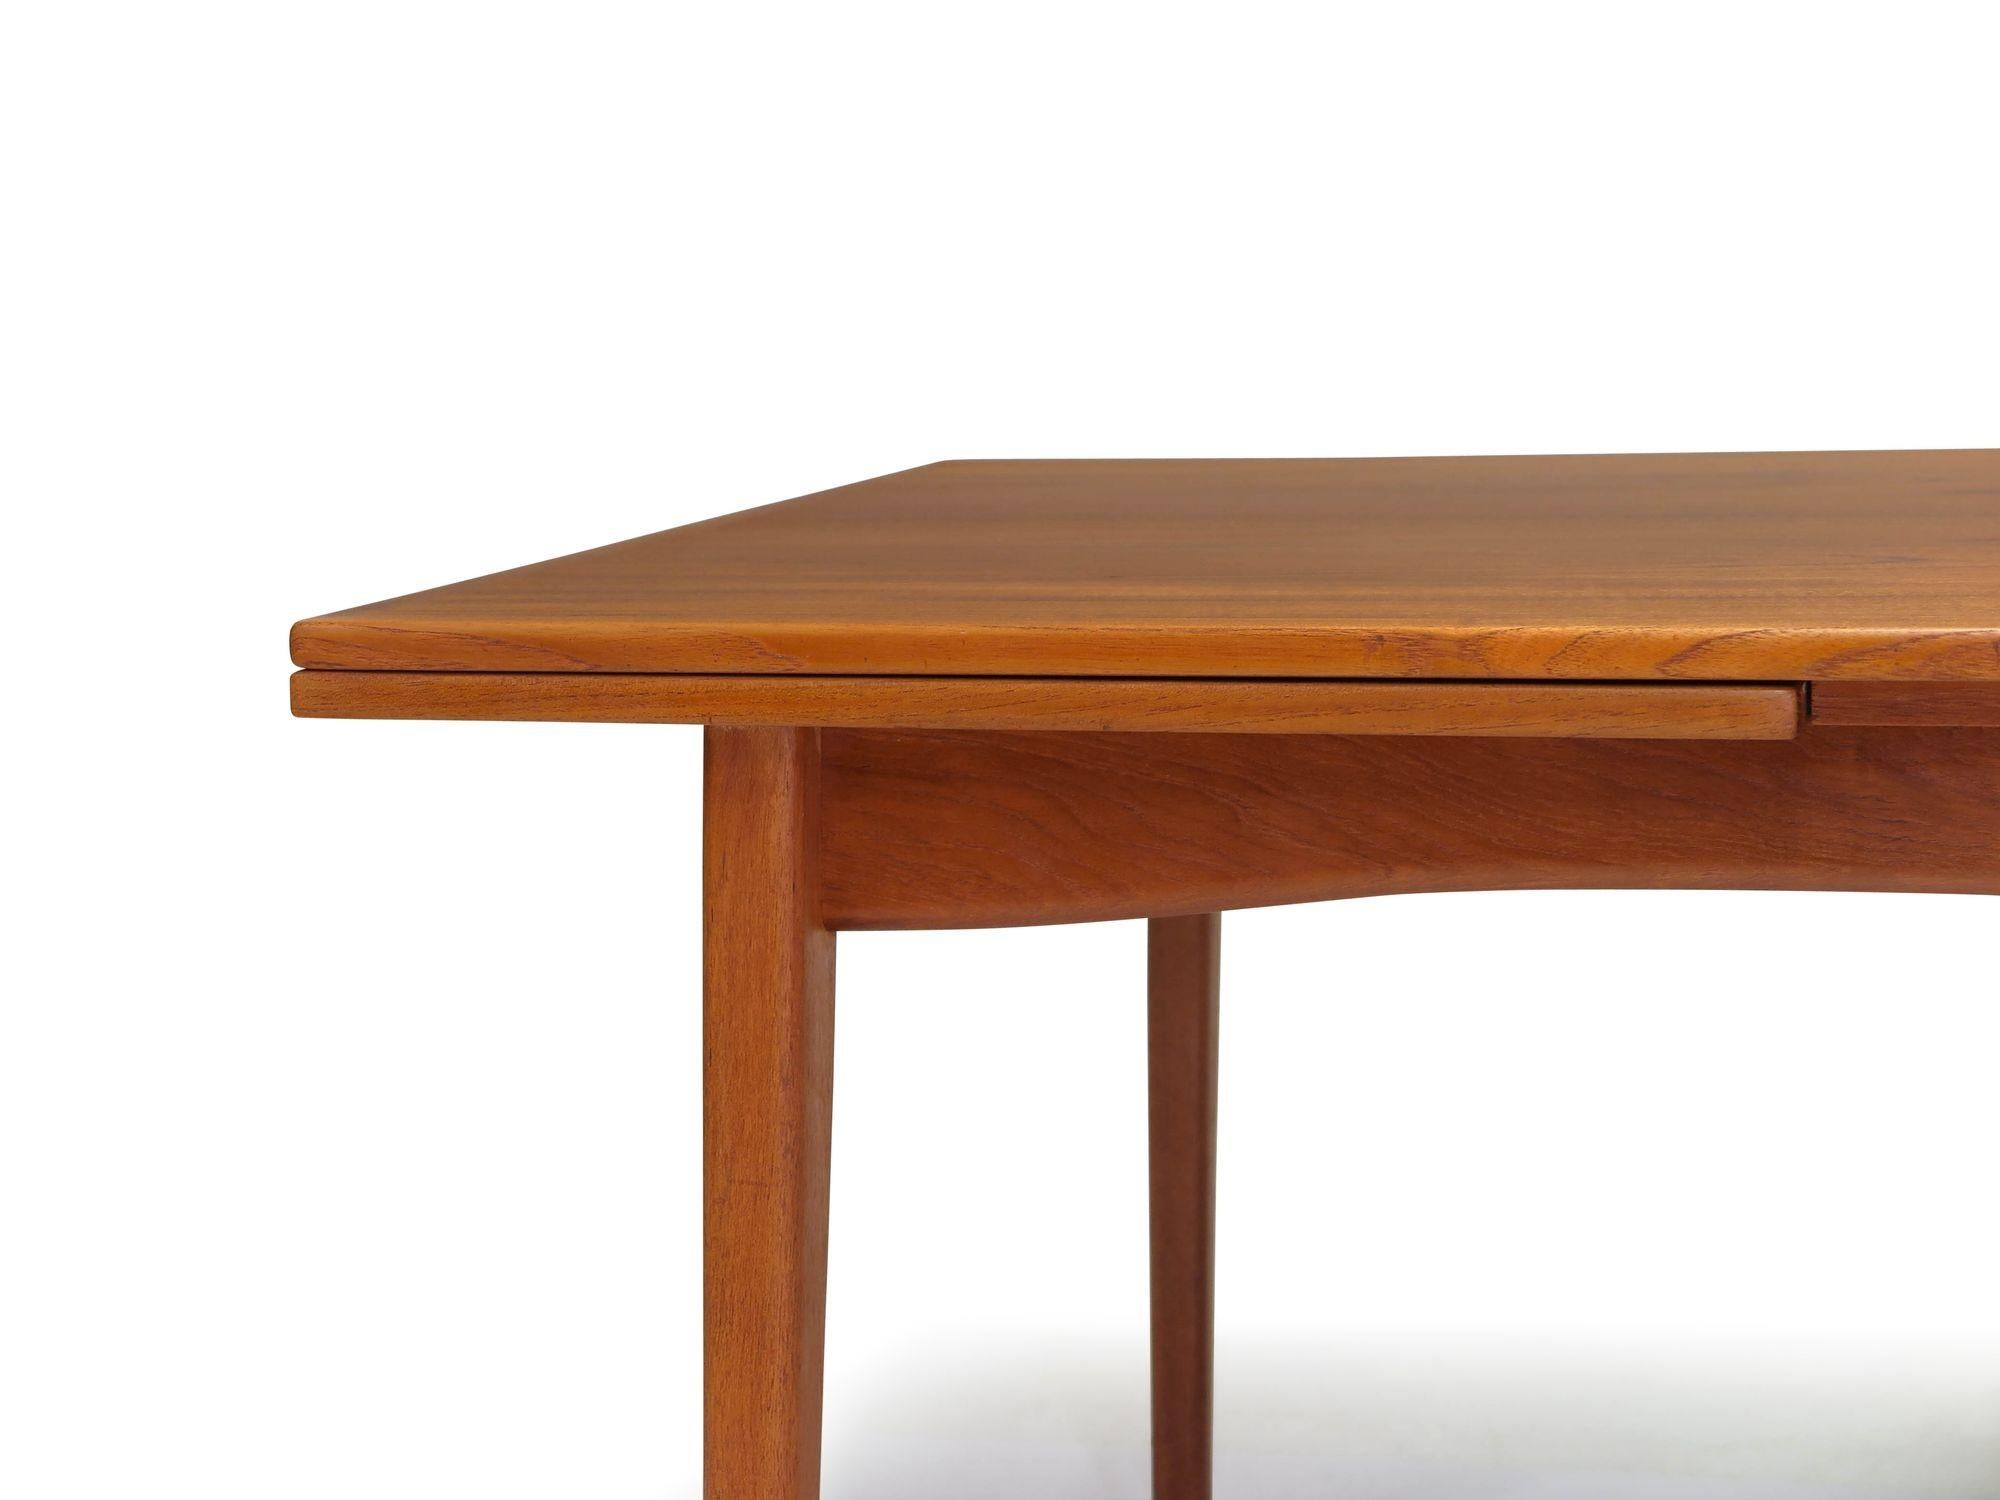 Table de salle à manger rectangulaire en teck de H. Sigh & Son, fabriquée en 1965 au Danemark. Cette table présente un grain assorti au livre, des bordures en bois massif et deux tiroirs à chaque extrémité. Relevée sur des pieds fuselés, elle